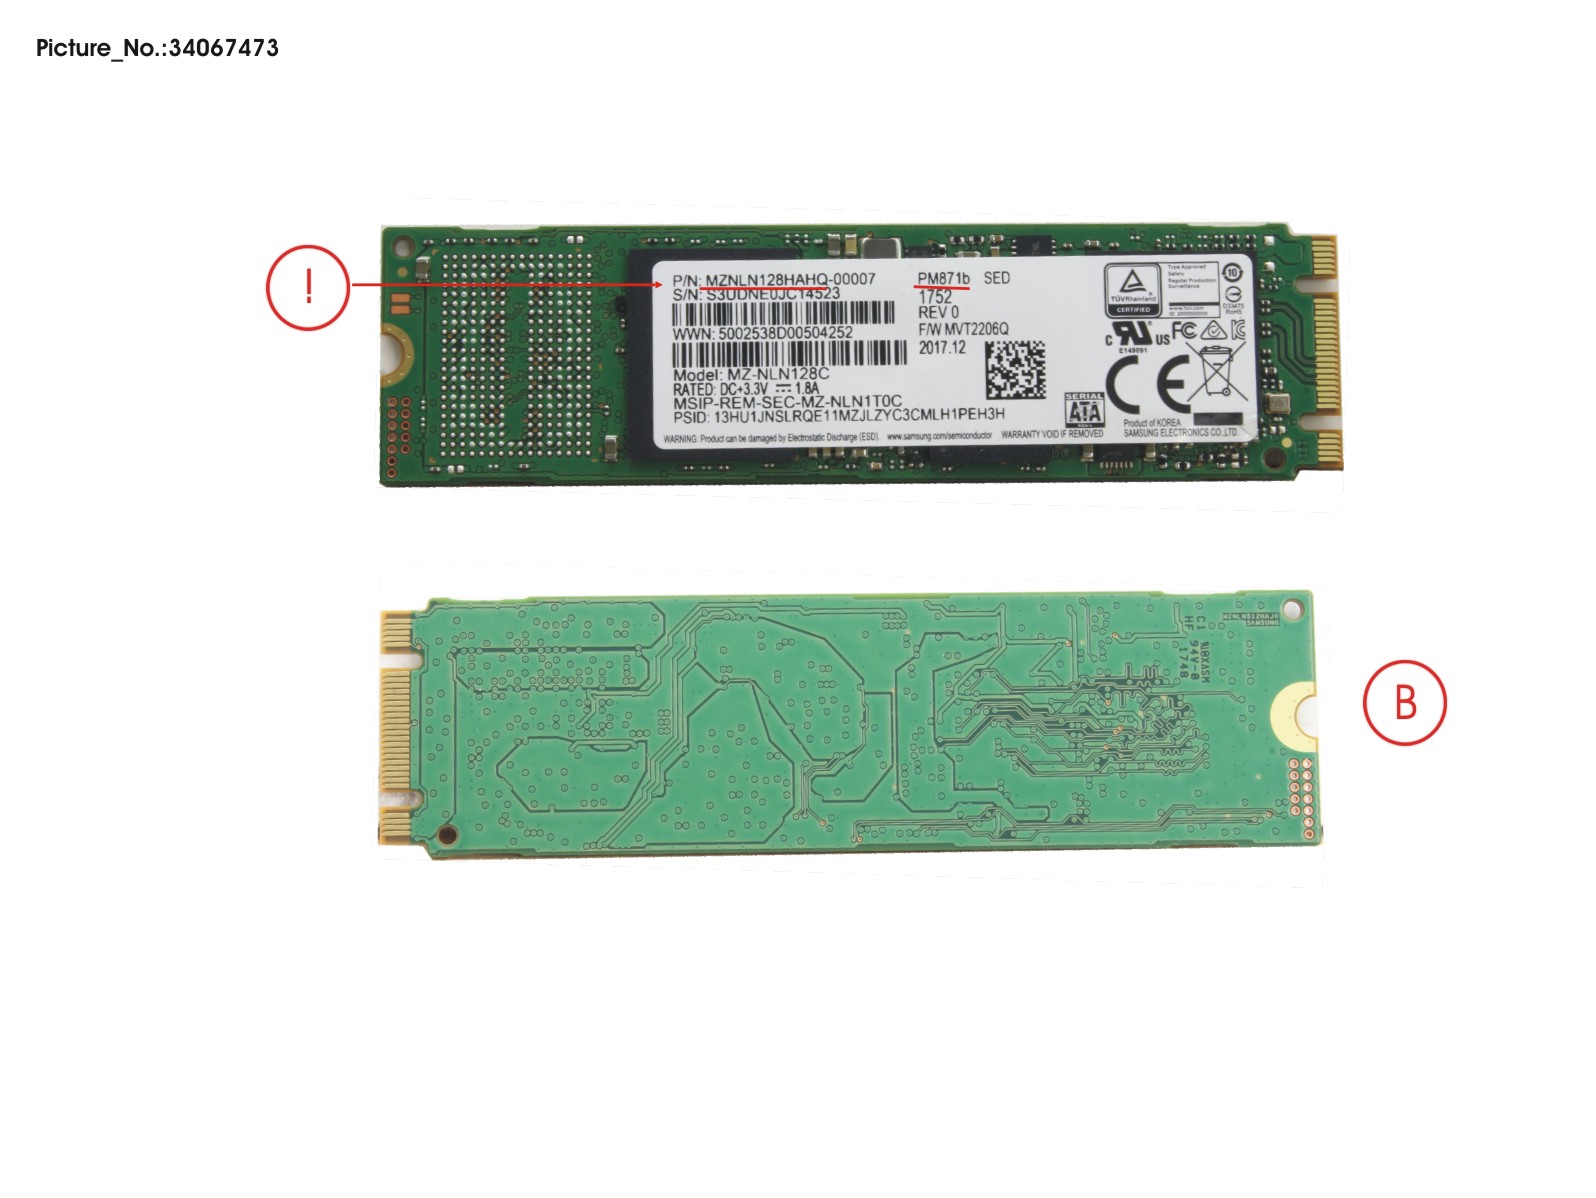 SSD S3 M.2 2280 PM871B 128GB (OPAL)